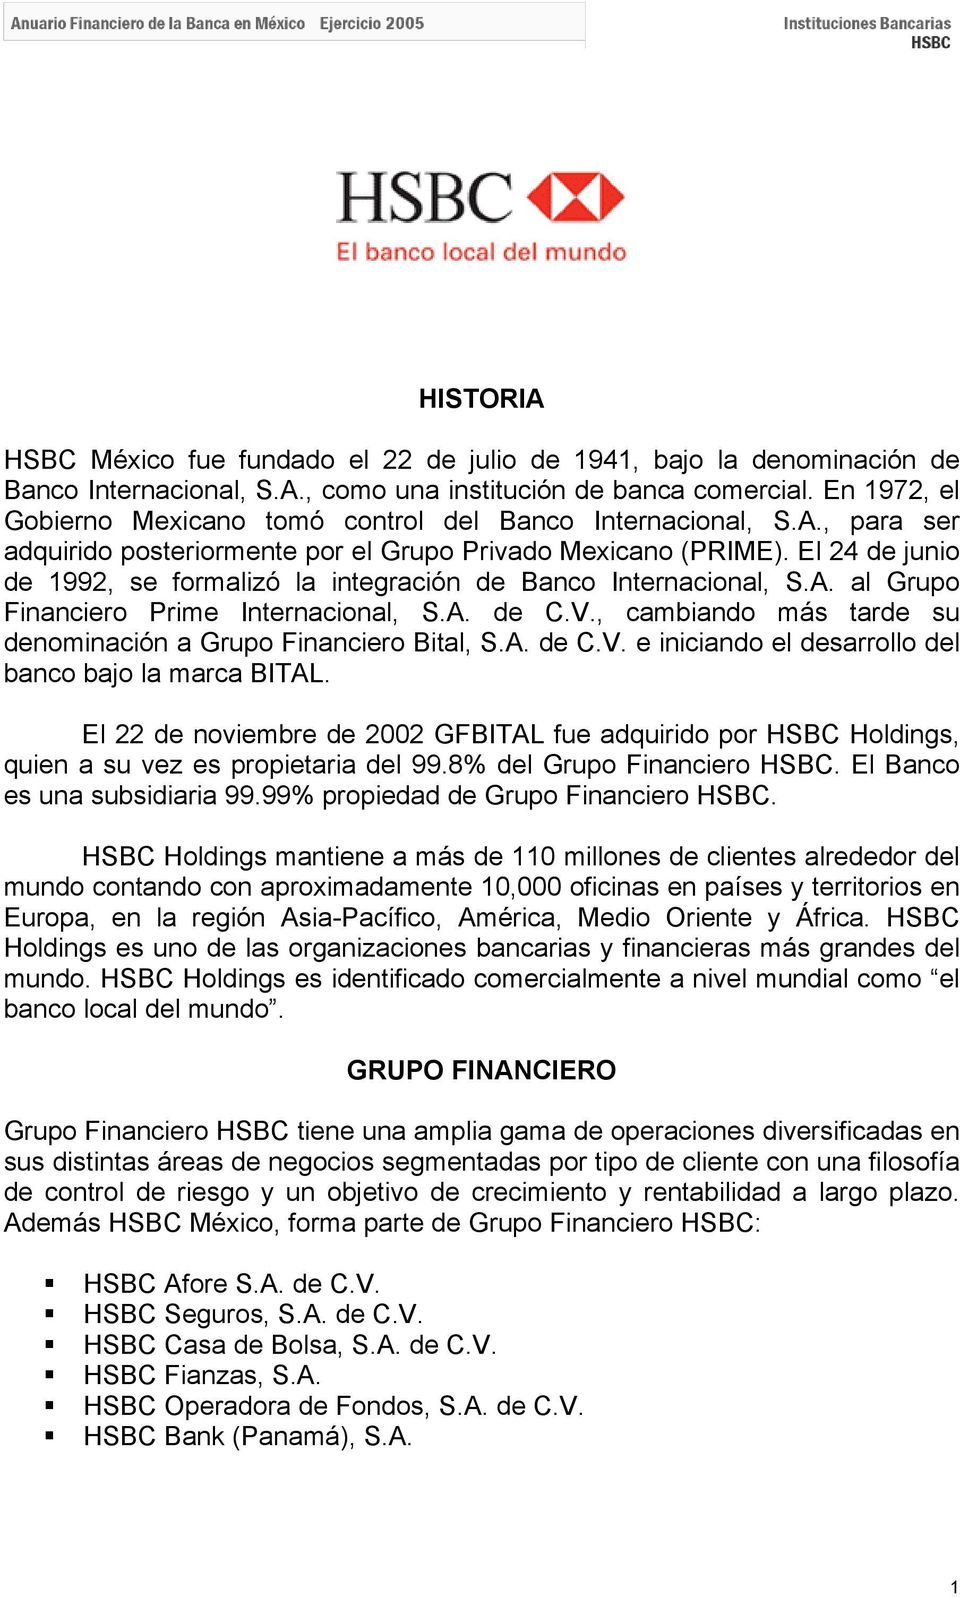 El 24 de junio de 1992, se formalizó la integración de Banco Internacional, S.A. al Grupo Financiero Prime Internacional, S.A. de C.V., cambiando más tarde su denominación a Grupo Financiero Bital, S.